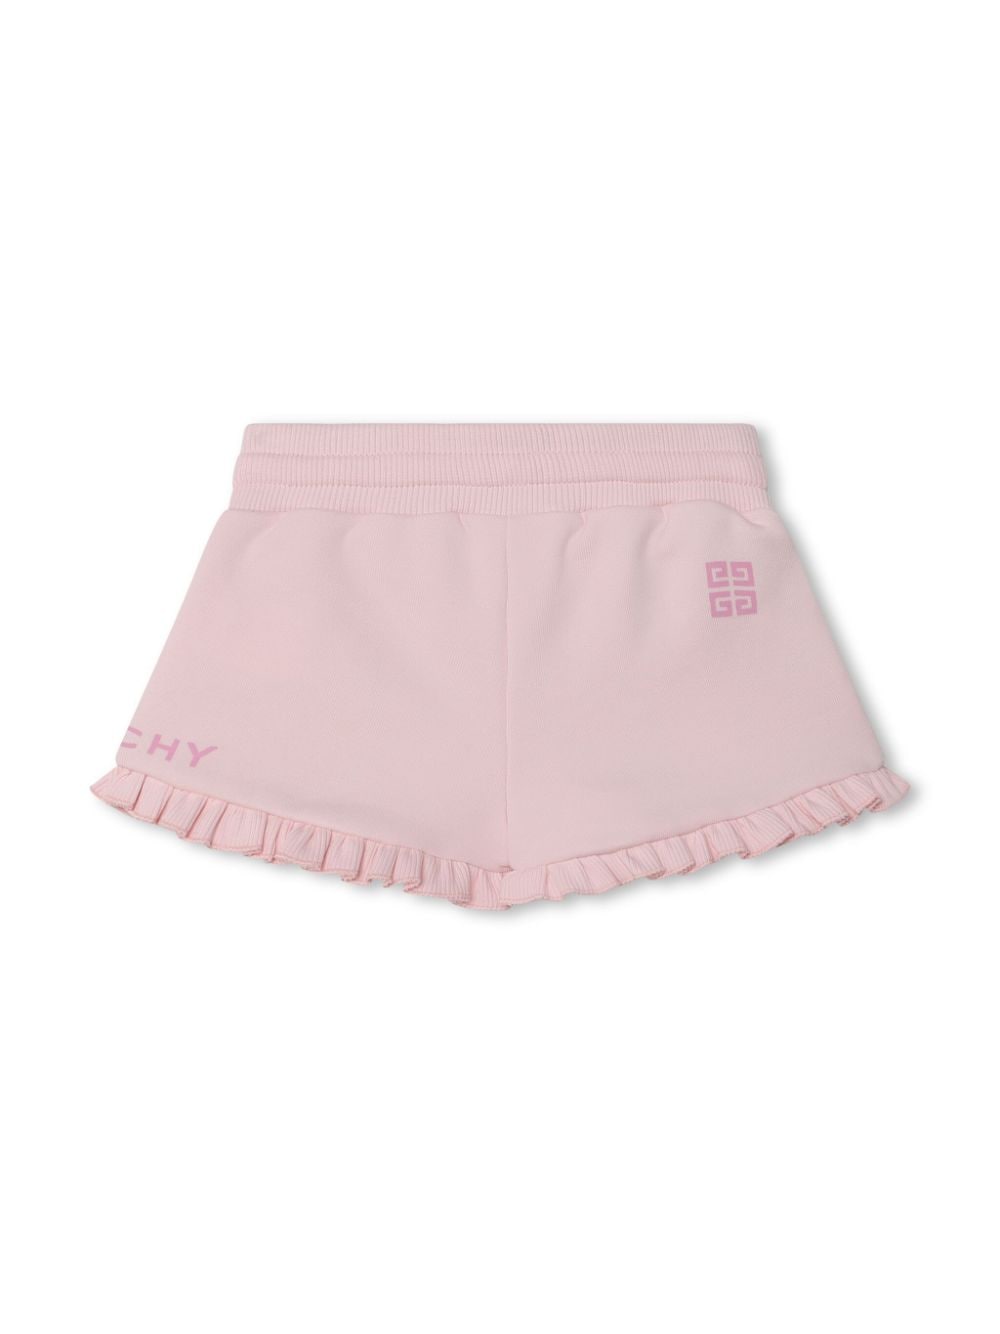 shorts rosa neonata